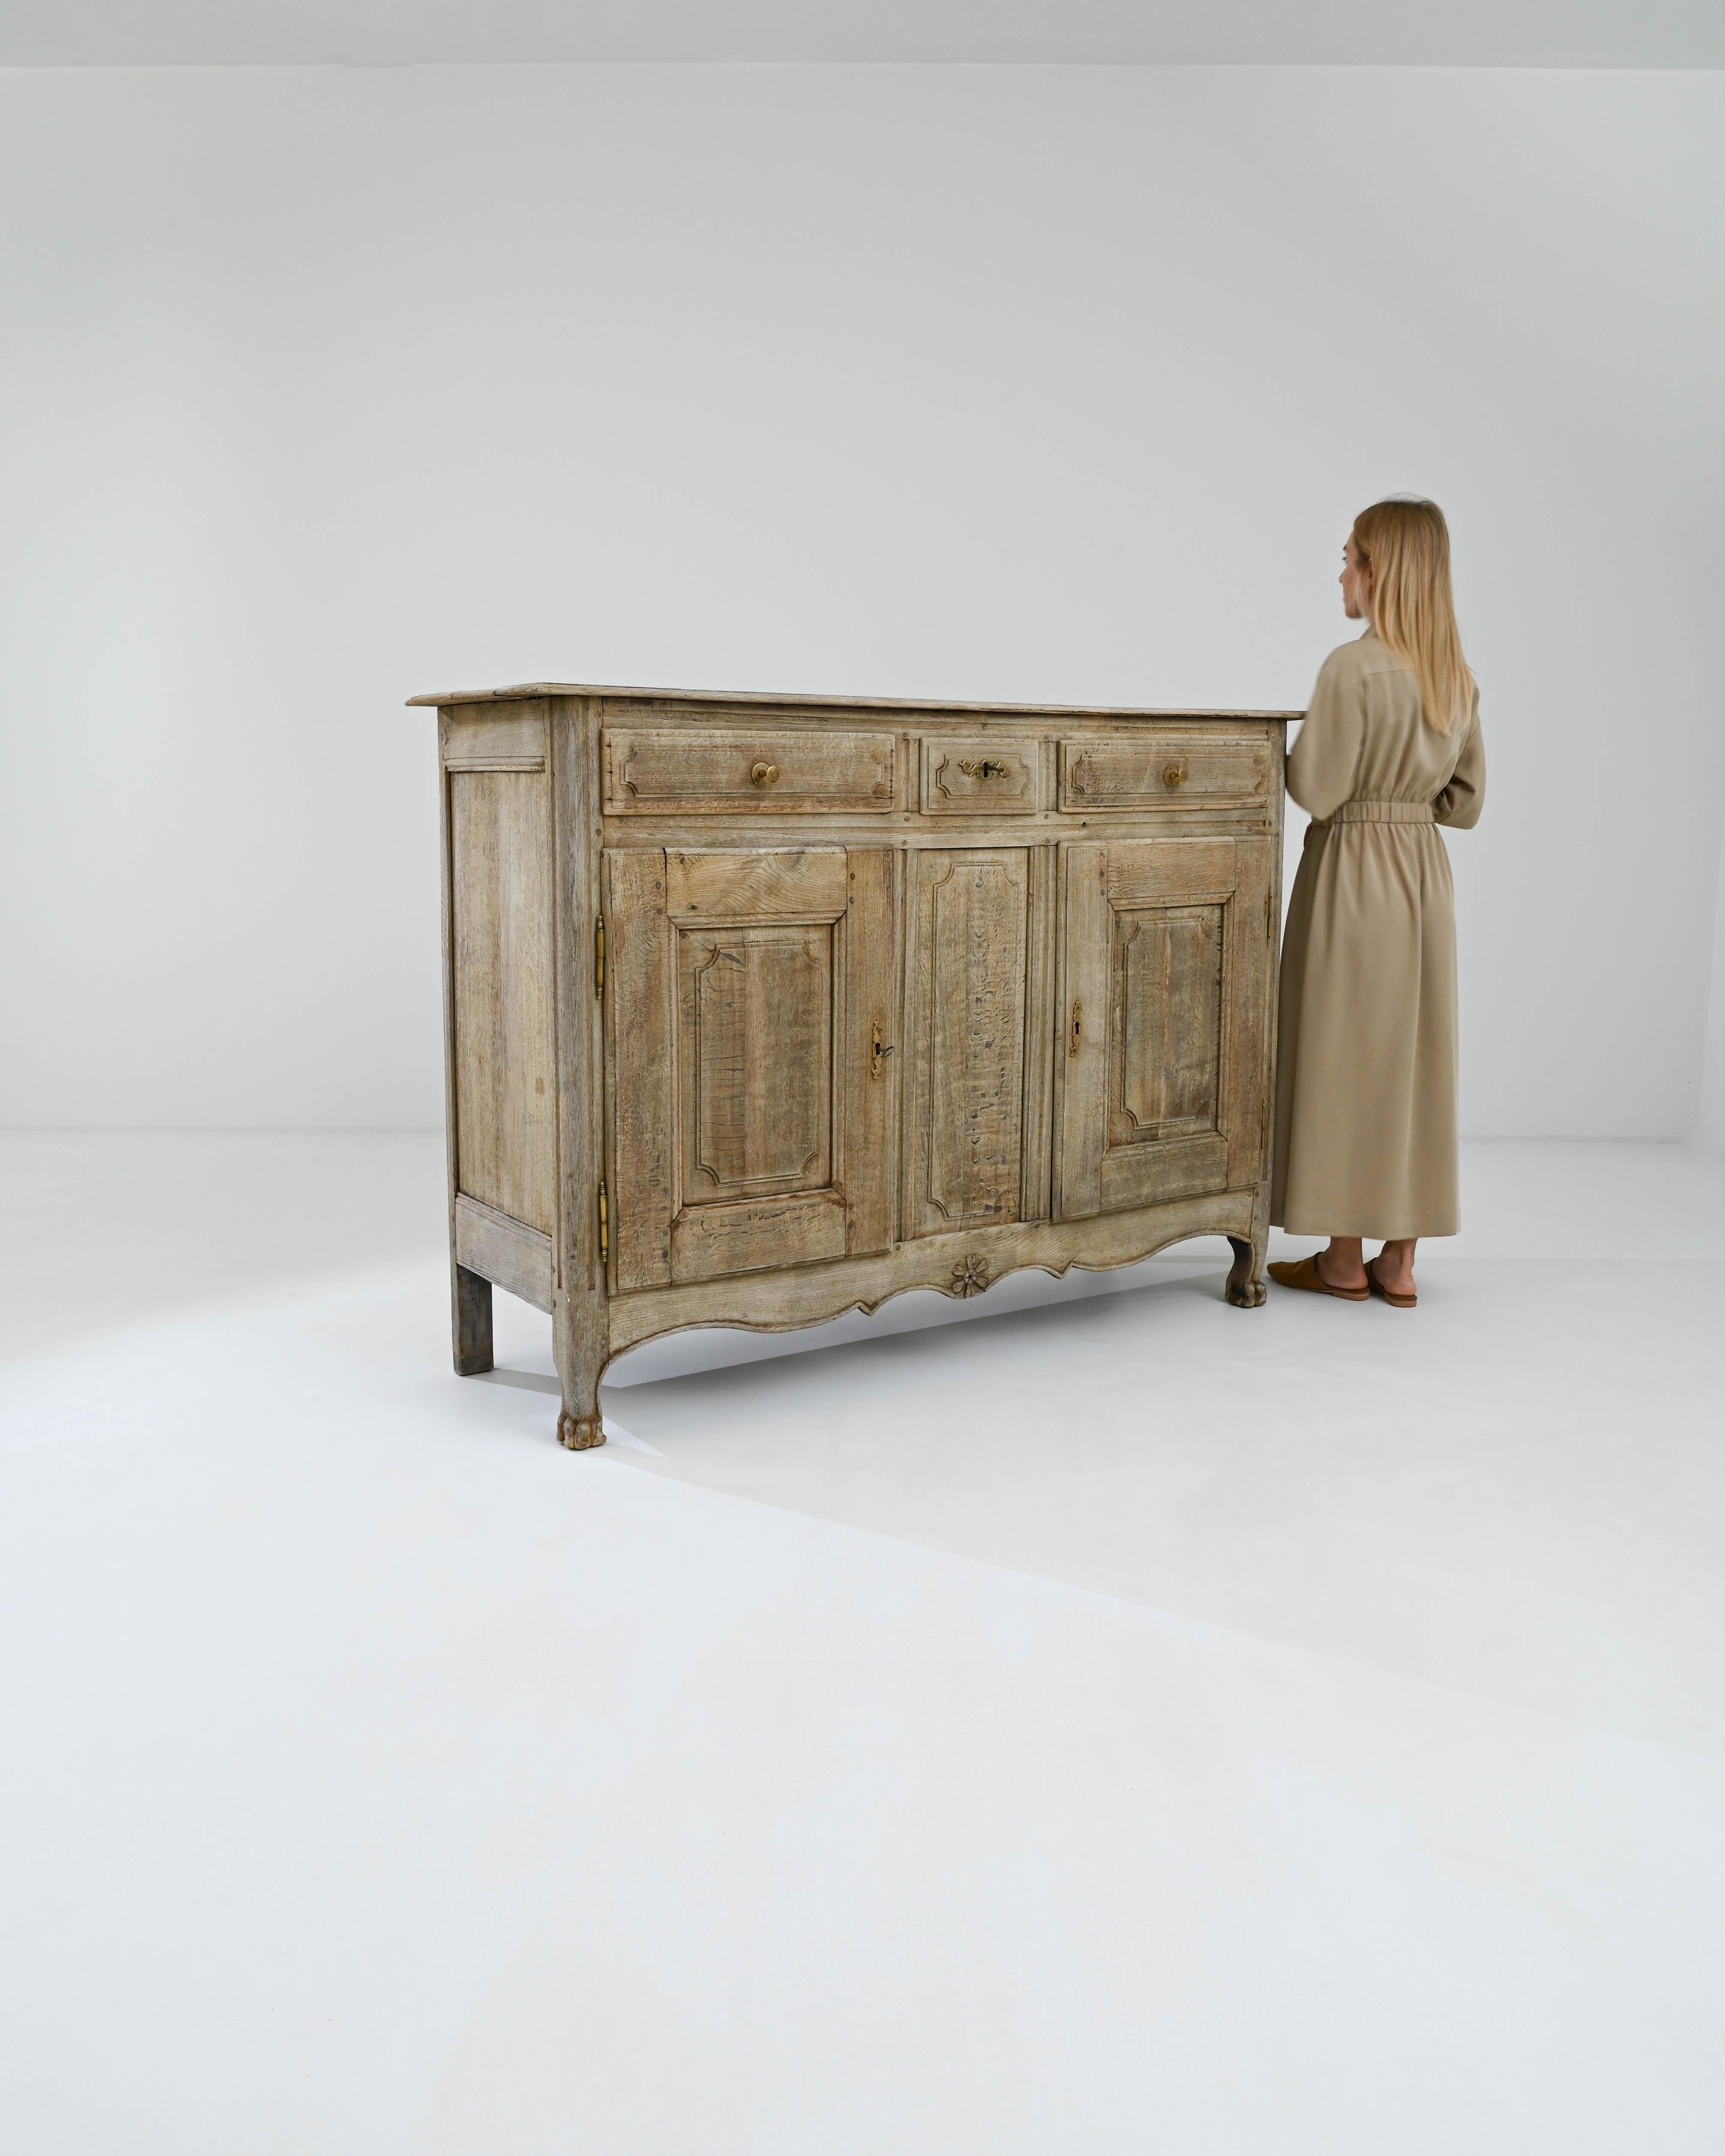 Ce meuble intemporel est un buffet français en chêne blanchi du XIXe siècle qui témoigne du savoir-faire de son époque. Il est couronné de sophistication et comporte trois tiroirs dans sa partie supérieure. Les deux tiroirs latéraux offrent beaucoup